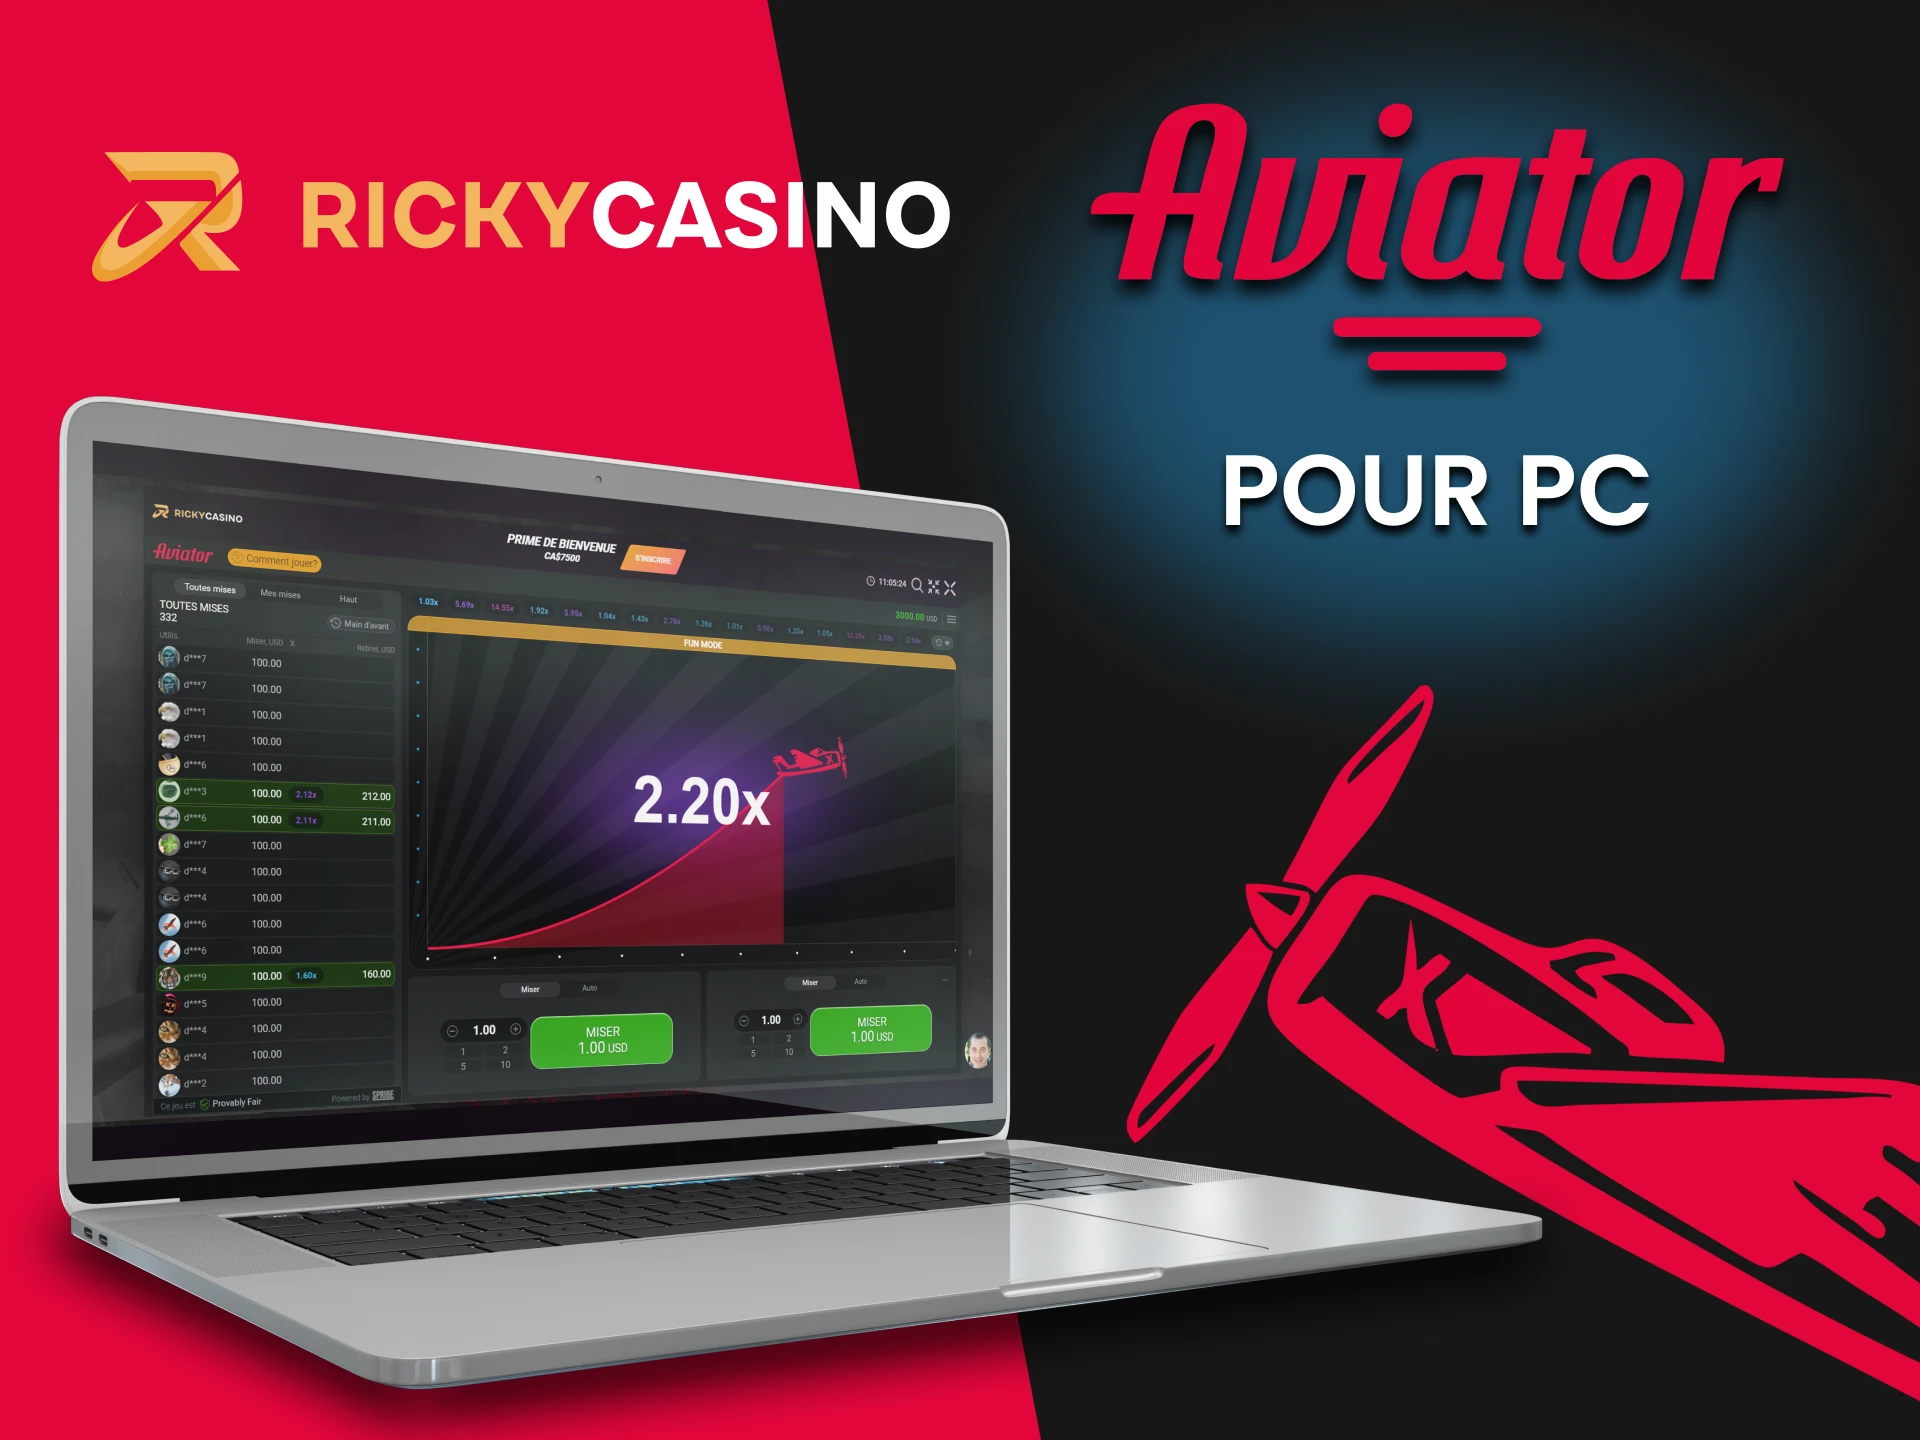 Essayez le jeu Aviator dans la version PC de Ricky Casino.